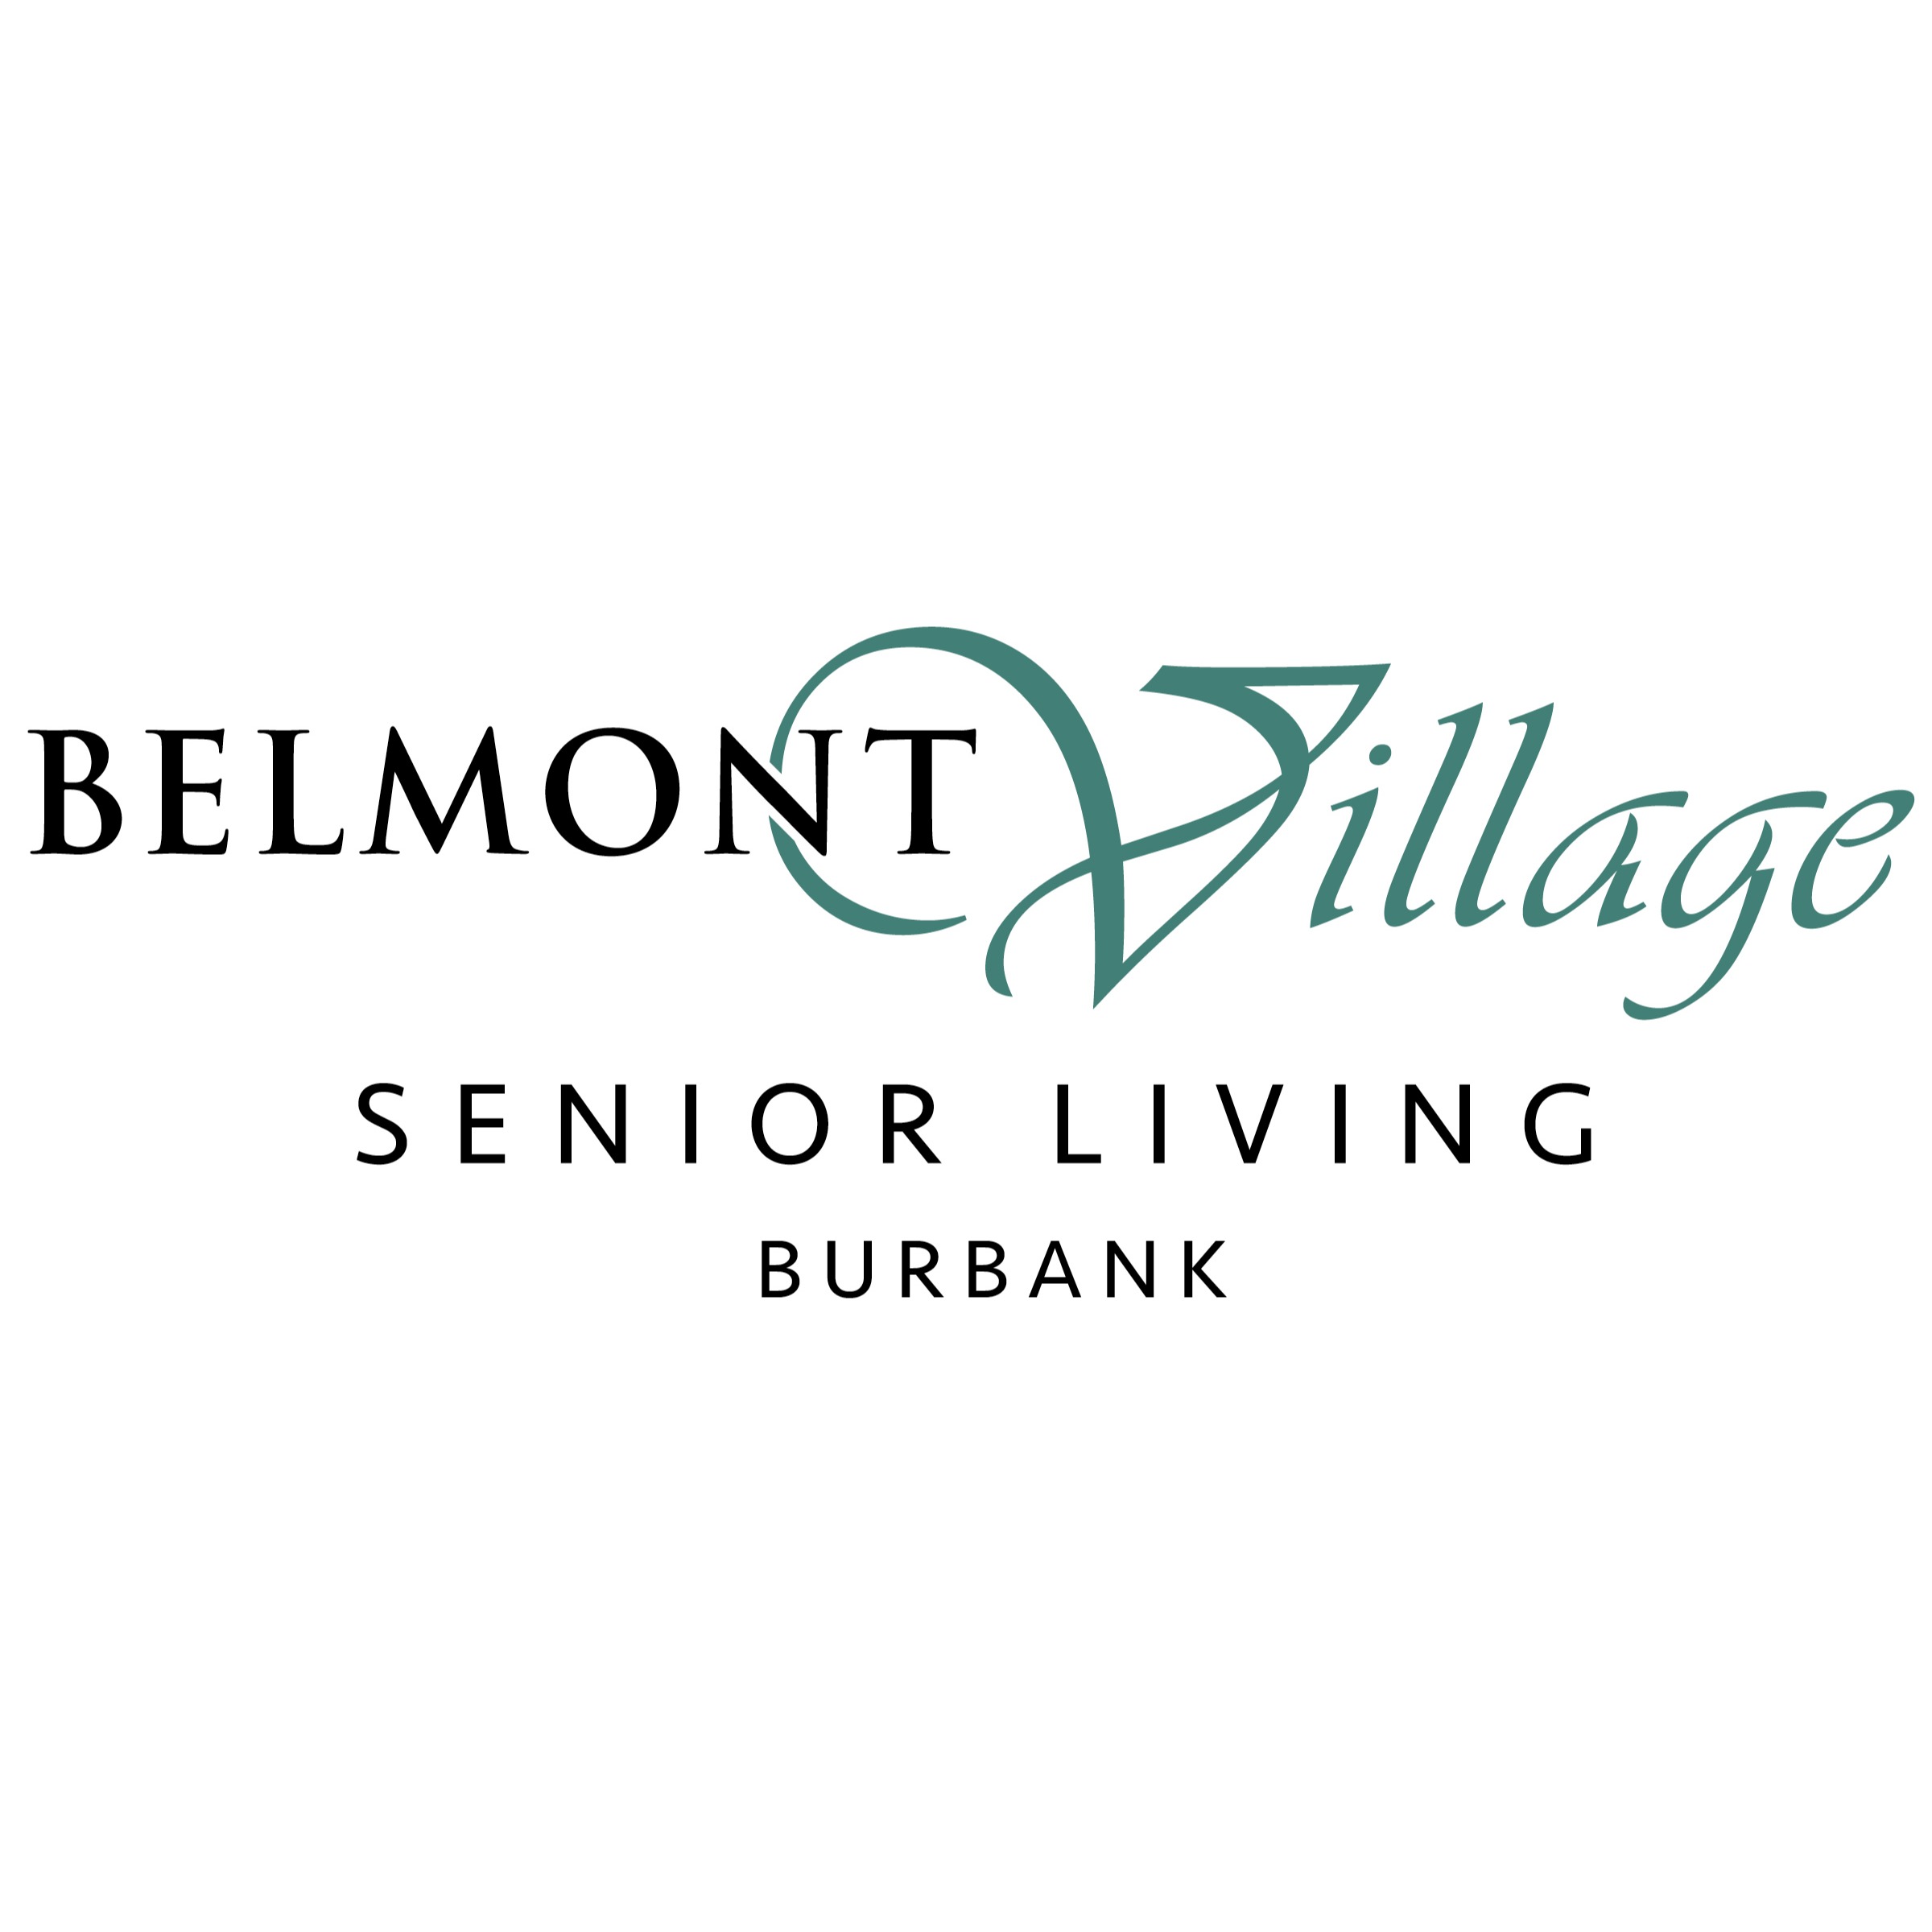 Belmont Village Senior Living Burbank